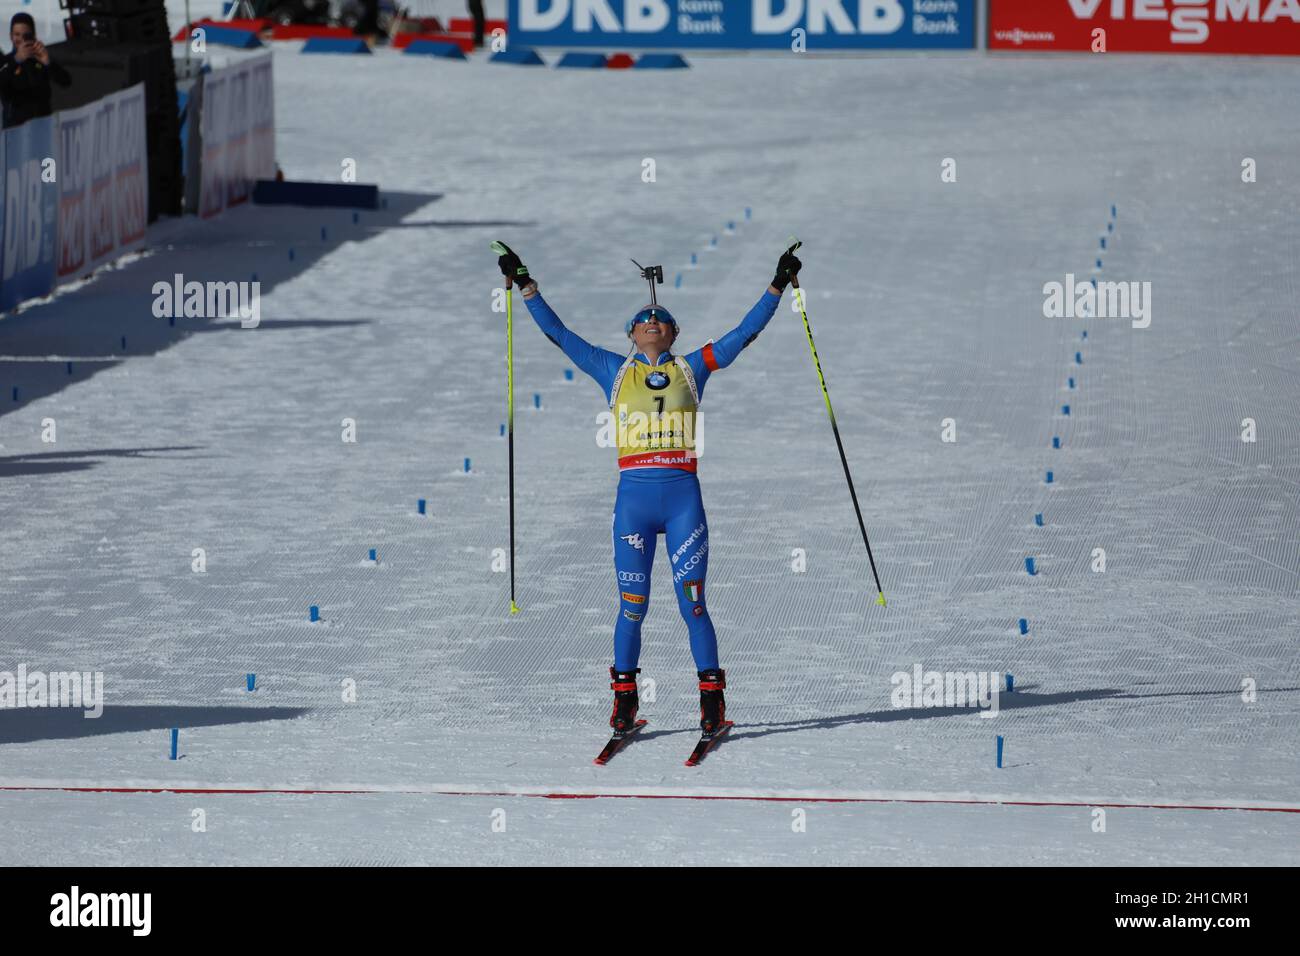 Dorothea Wierer (Italien) zeigt ihr Glück nach dem WM-Titel bei der IBU Biathlon-Weltmeisterschaft Antholz 2020 Stock Photo